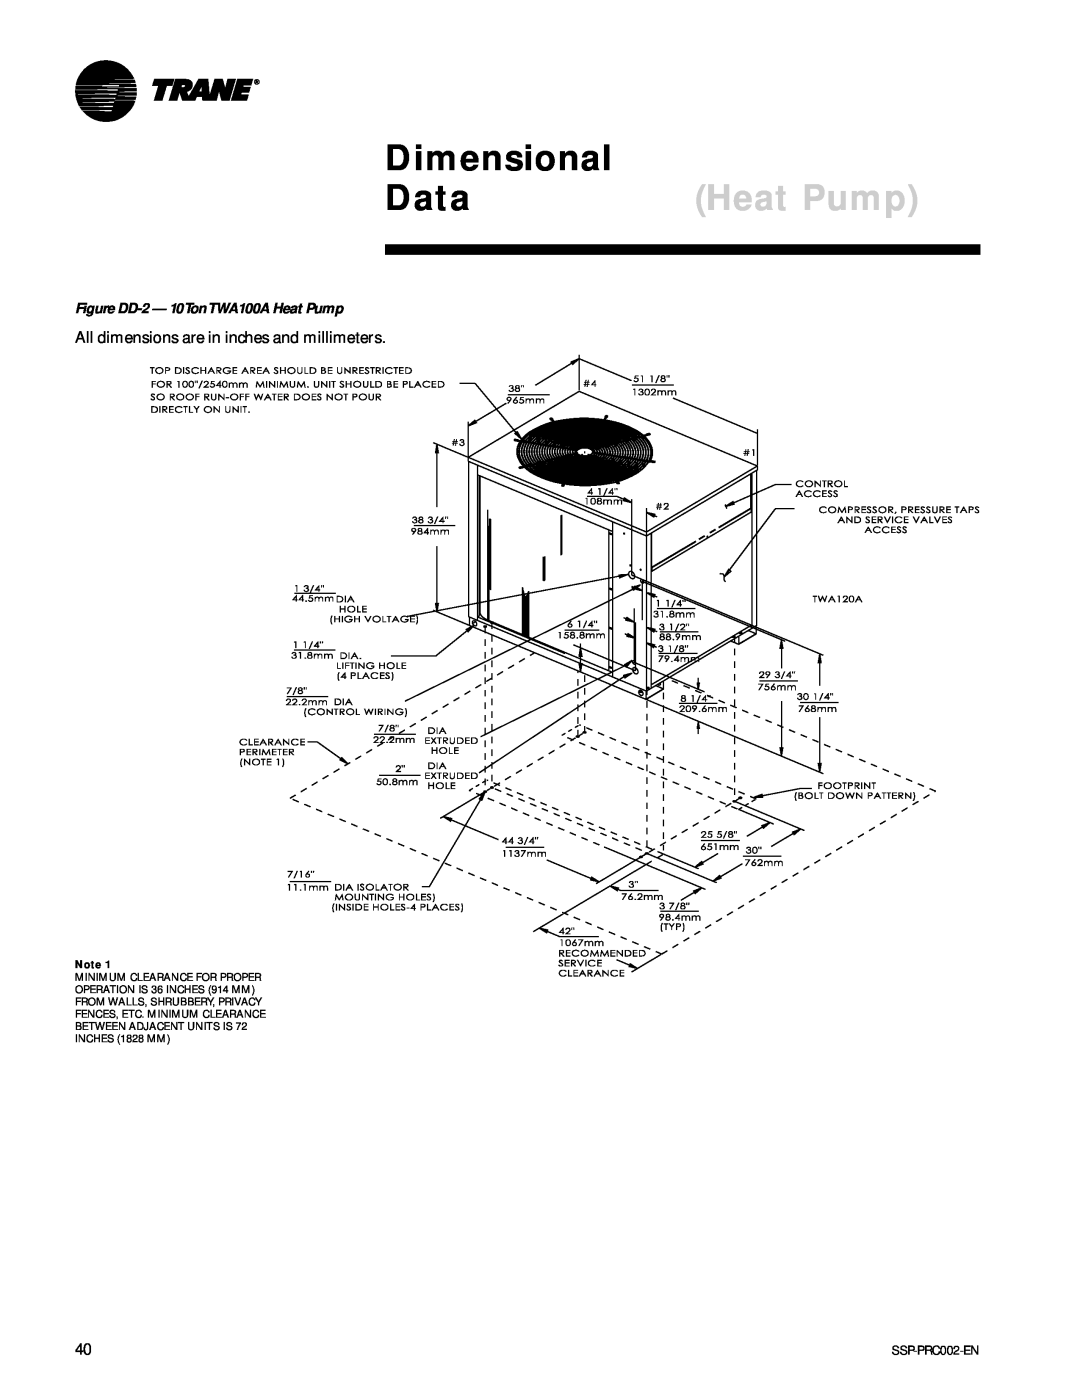 Trane TWA075A, TWE200B, TWA200B, TWE050A manual Dimensional, Data, Figure DD-2- 10TonTWA100A Heat Pump 